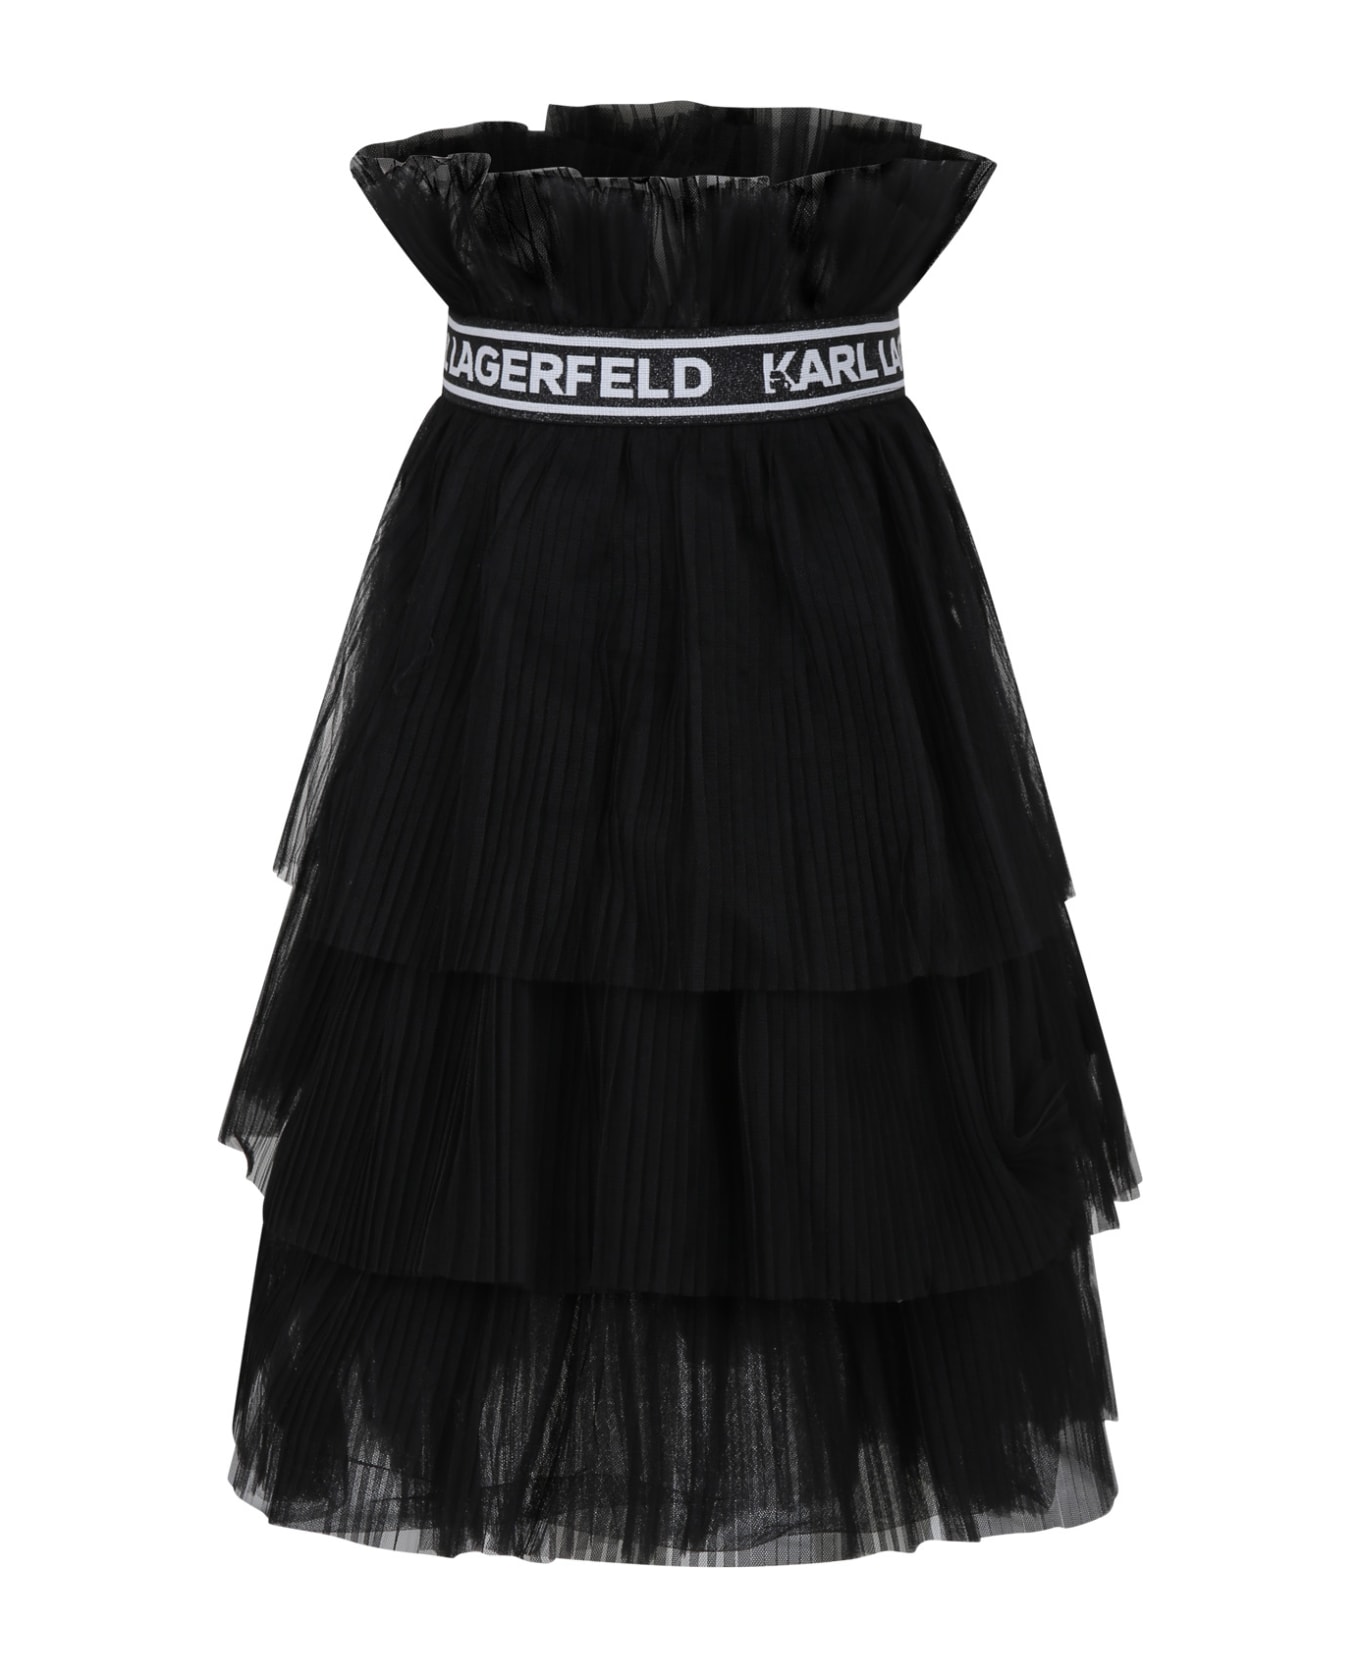 Karl Lagerfeld Kids Black Fuchsia Skirt For Girl - Black ボトムス